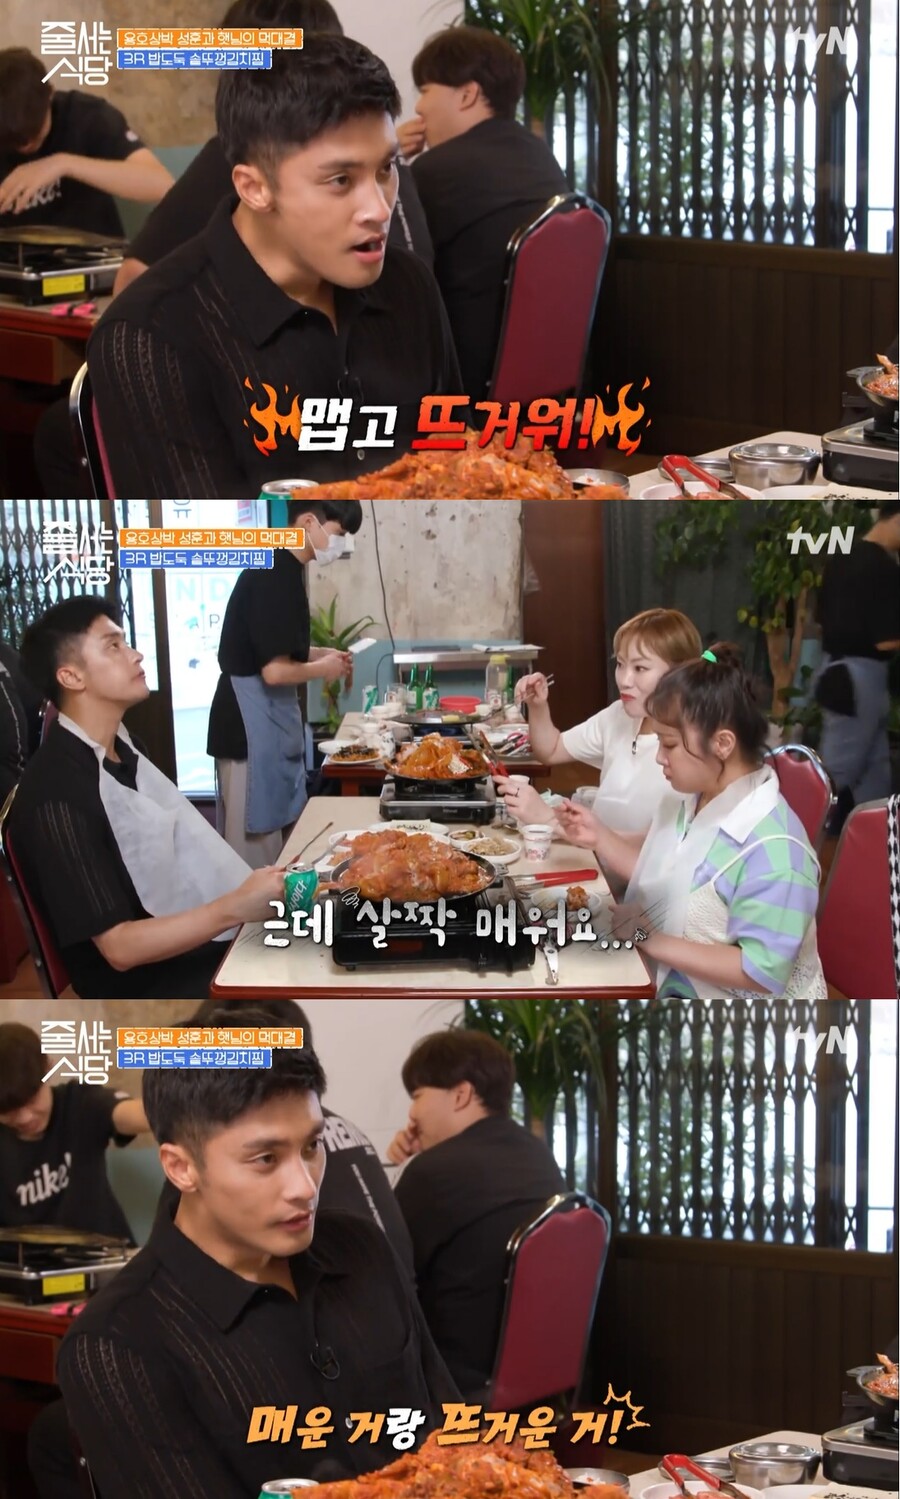 ▲ tvN 예능프로그램 '줄 서는 식당' 배우 성훈. 출처| tvN